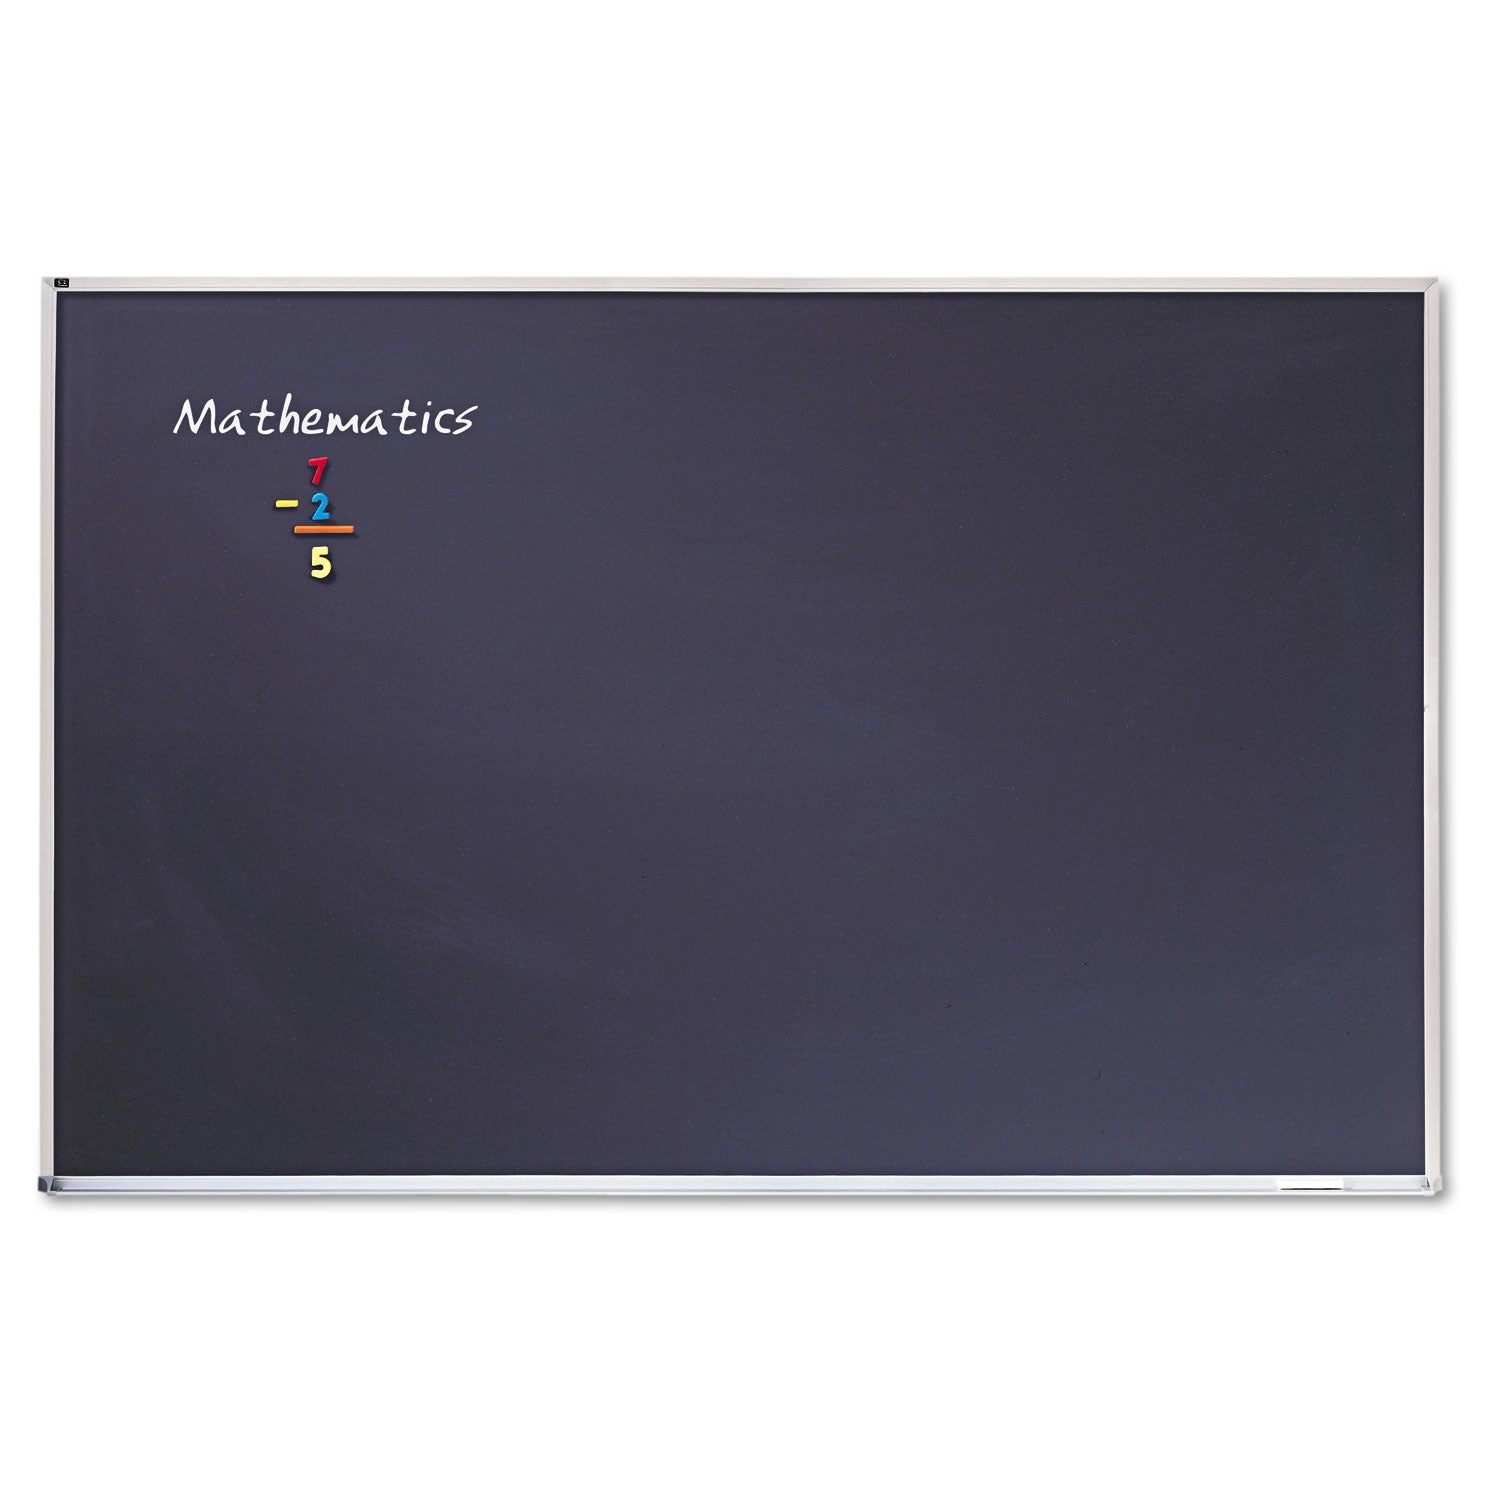 Porcelain Magnetic Chalkboard, 72 x 48, Black Surface, Silver Aluminum Frame - 